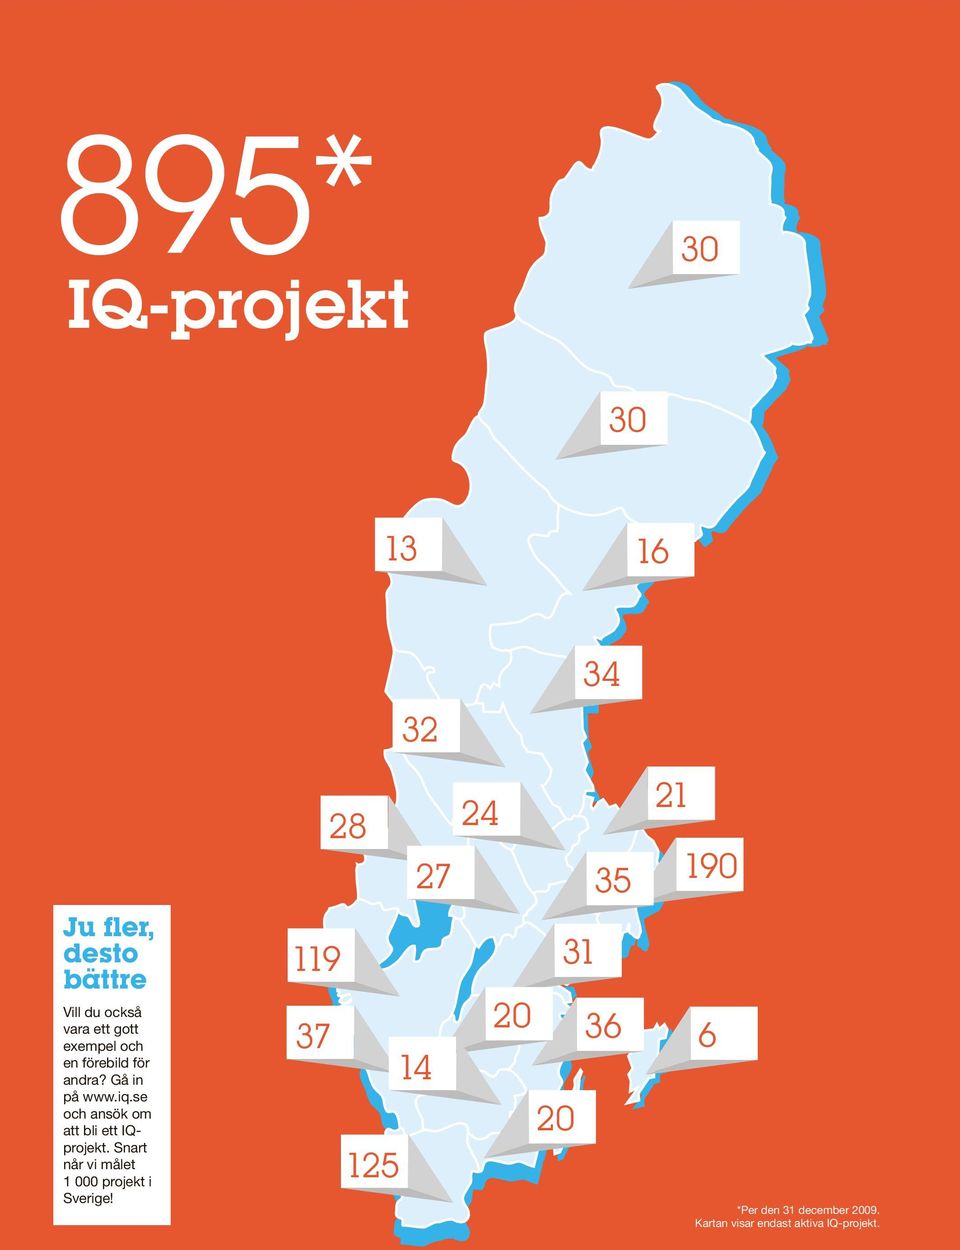 se och ansök om att bli ett IQprojekt. Snart når vi målet 1 000 projekt i Sverige!